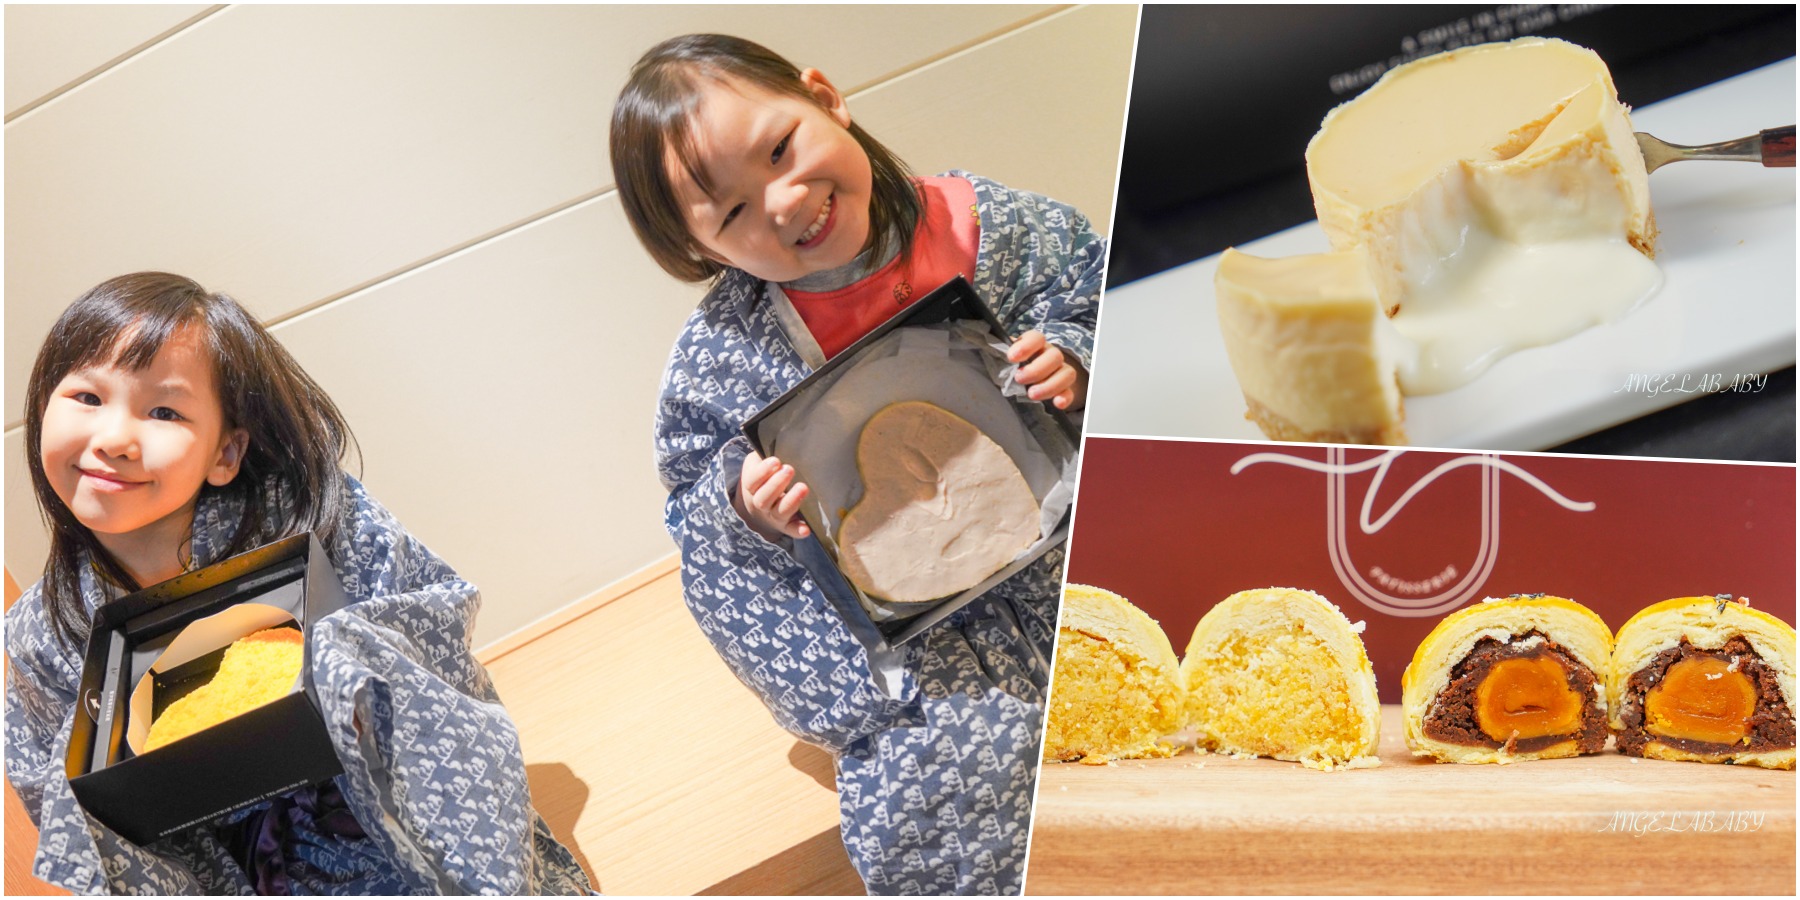 民生社區甜點『Le’ ona era 萊歐娜甜點』流心乳酪蛋糕、台北過年禮盒推薦、低糖少添加的健康甜點 @梅格(Angelababy)享樂日記